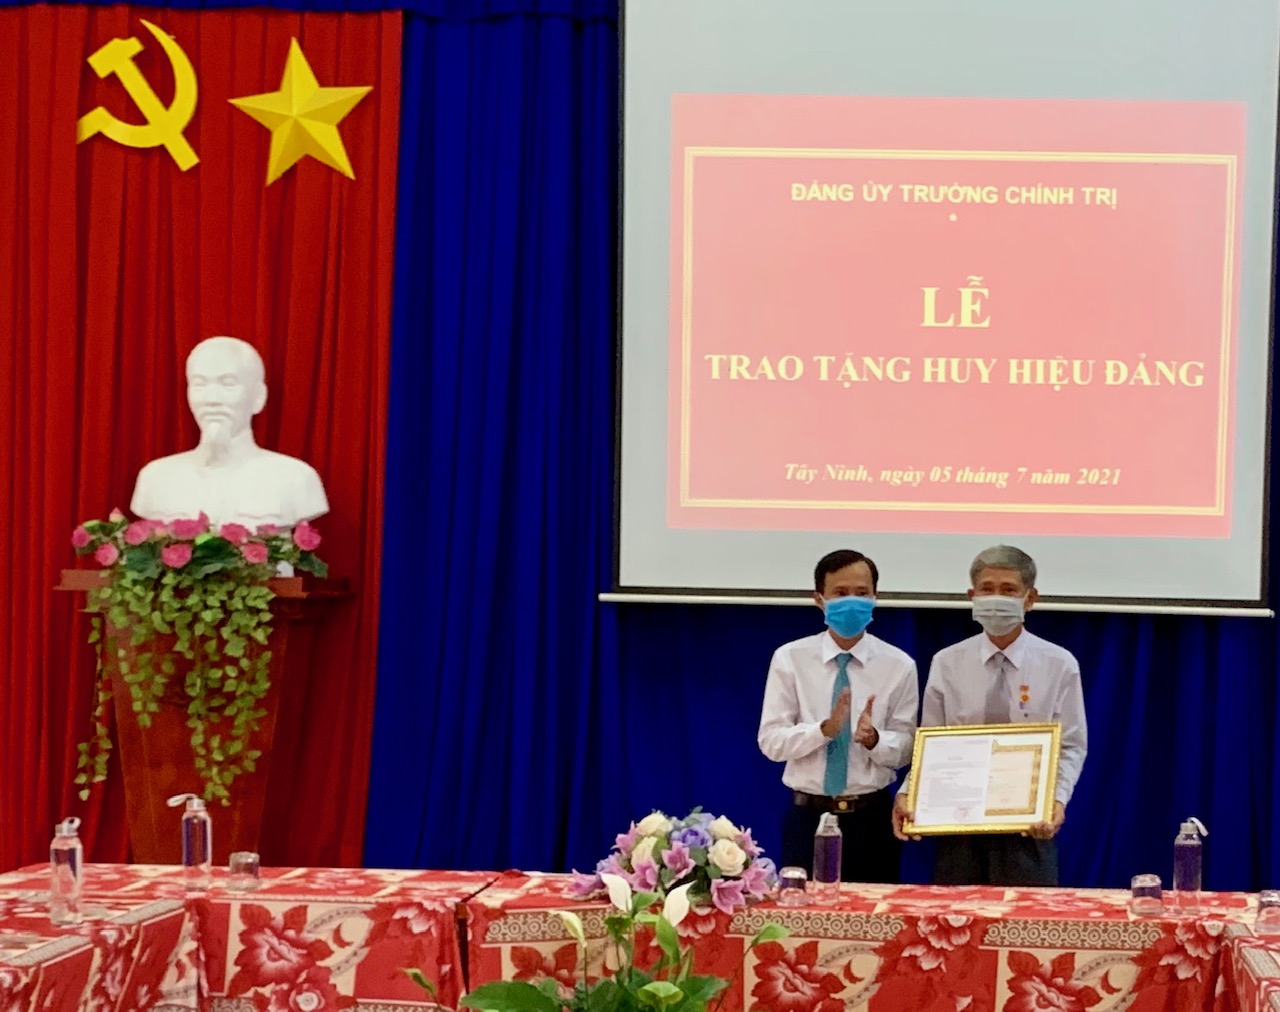 Đảng bộ Trường Chính trị trao tặng huy hiệu 30 năm tuổi Đảng